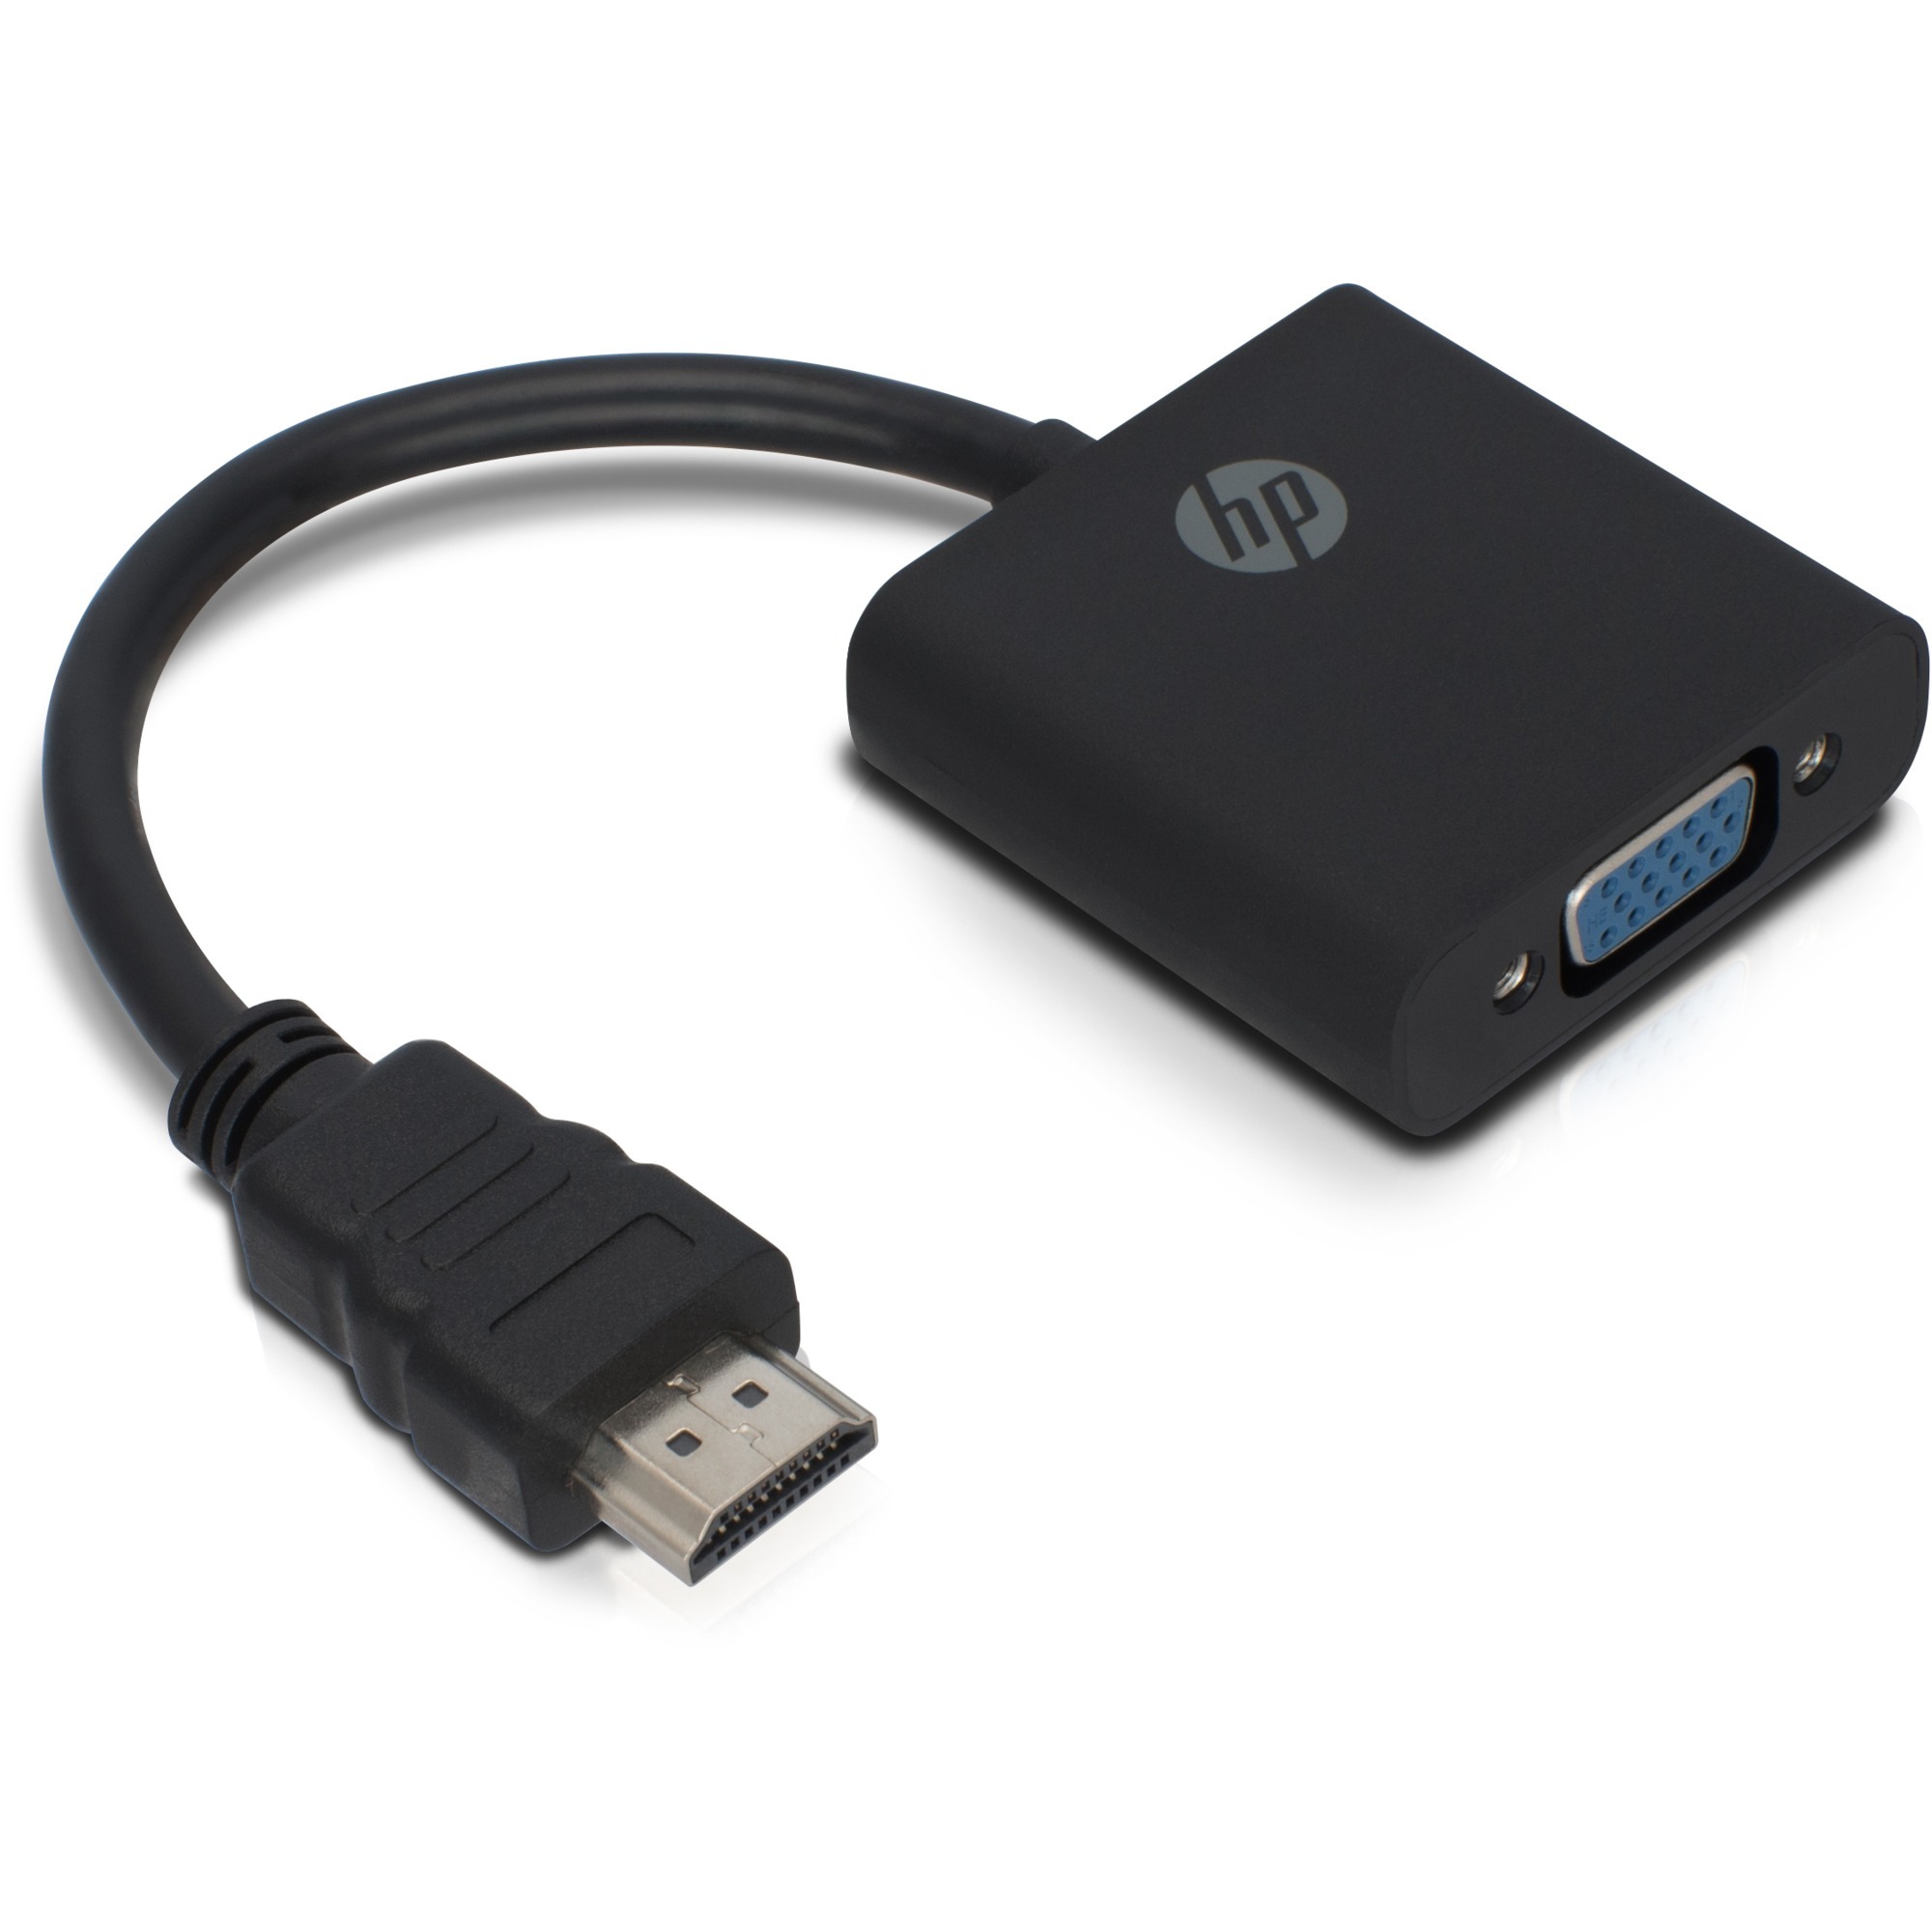 Image of Alternate - Adapter HDMI (Stecker) > VGA (Buchse) online einkaufen bei Alternate